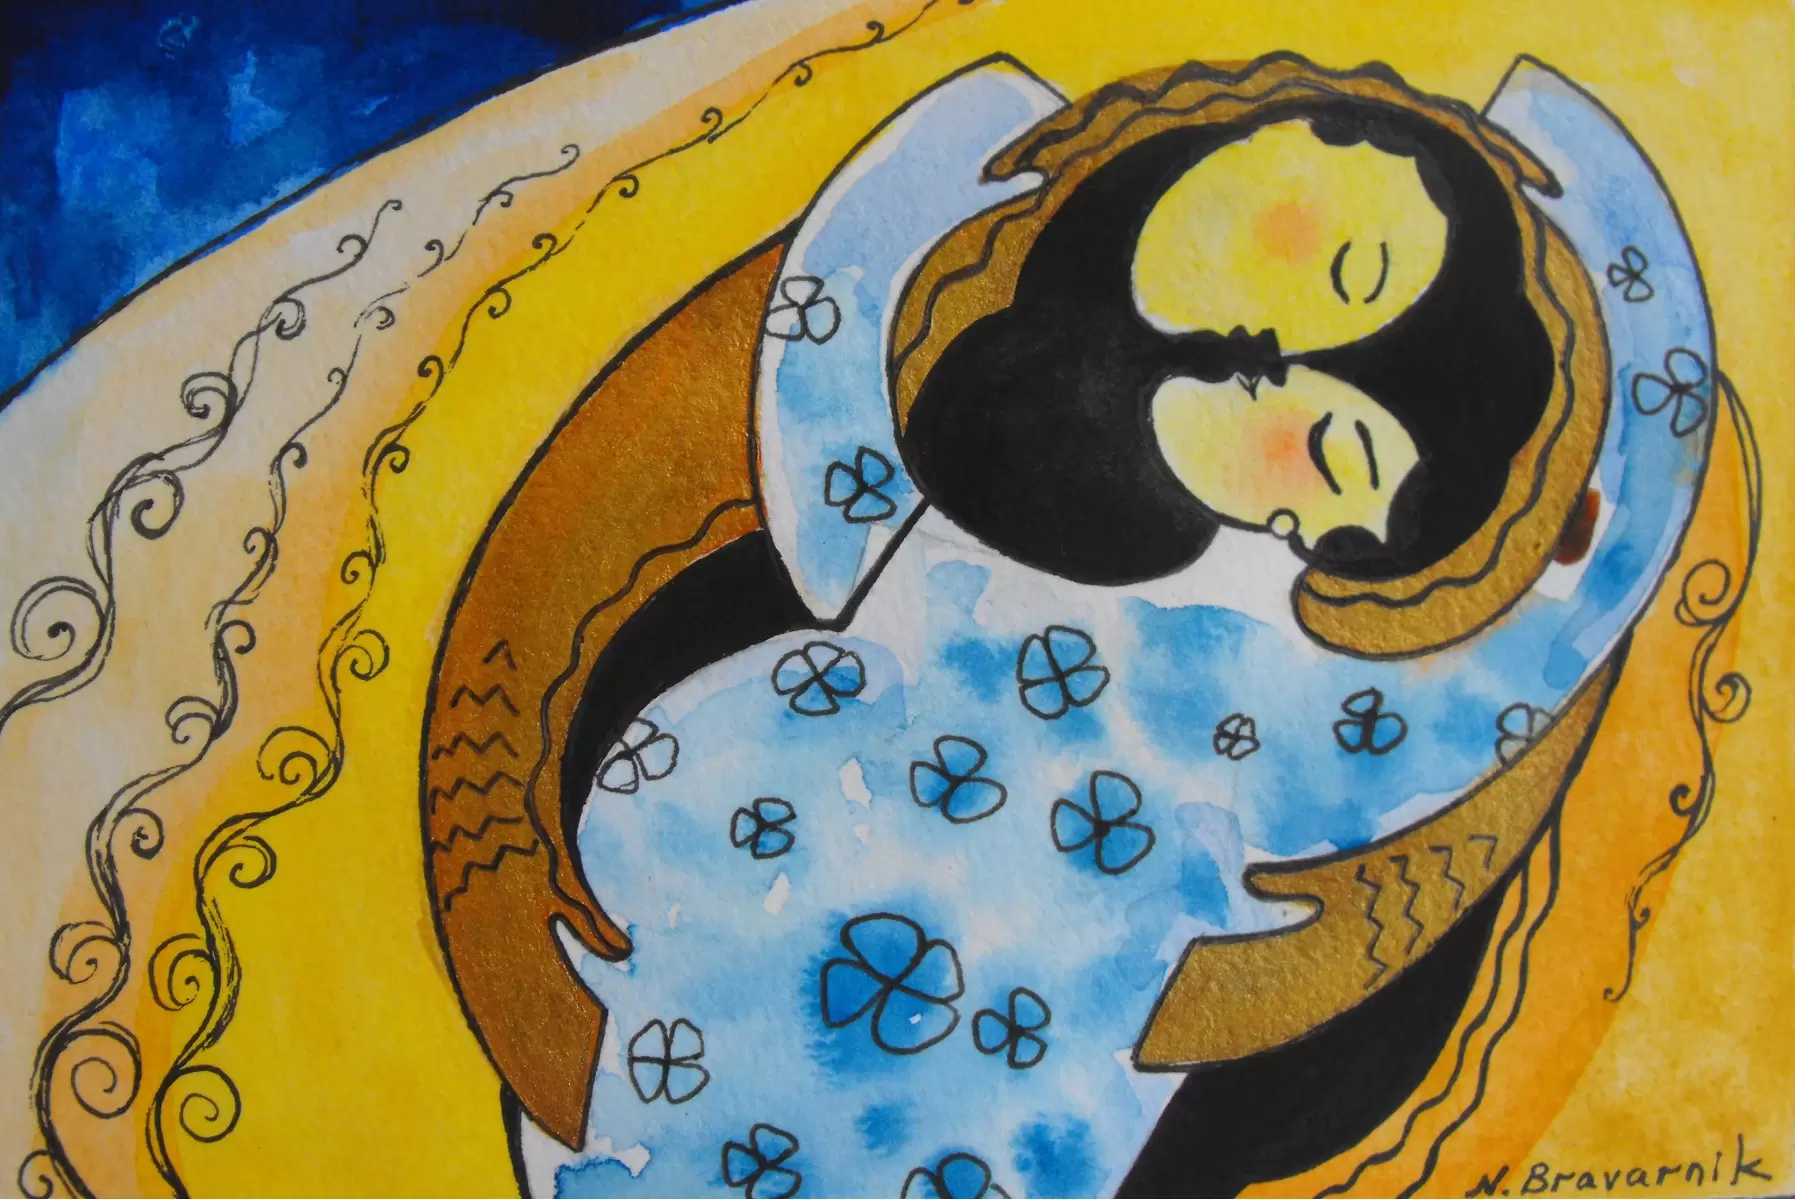 אהבתי - נטליה ברברניק - תמונות רומנטיות לחדר שינה איור רישום בצבע  - מק''ט: 122257